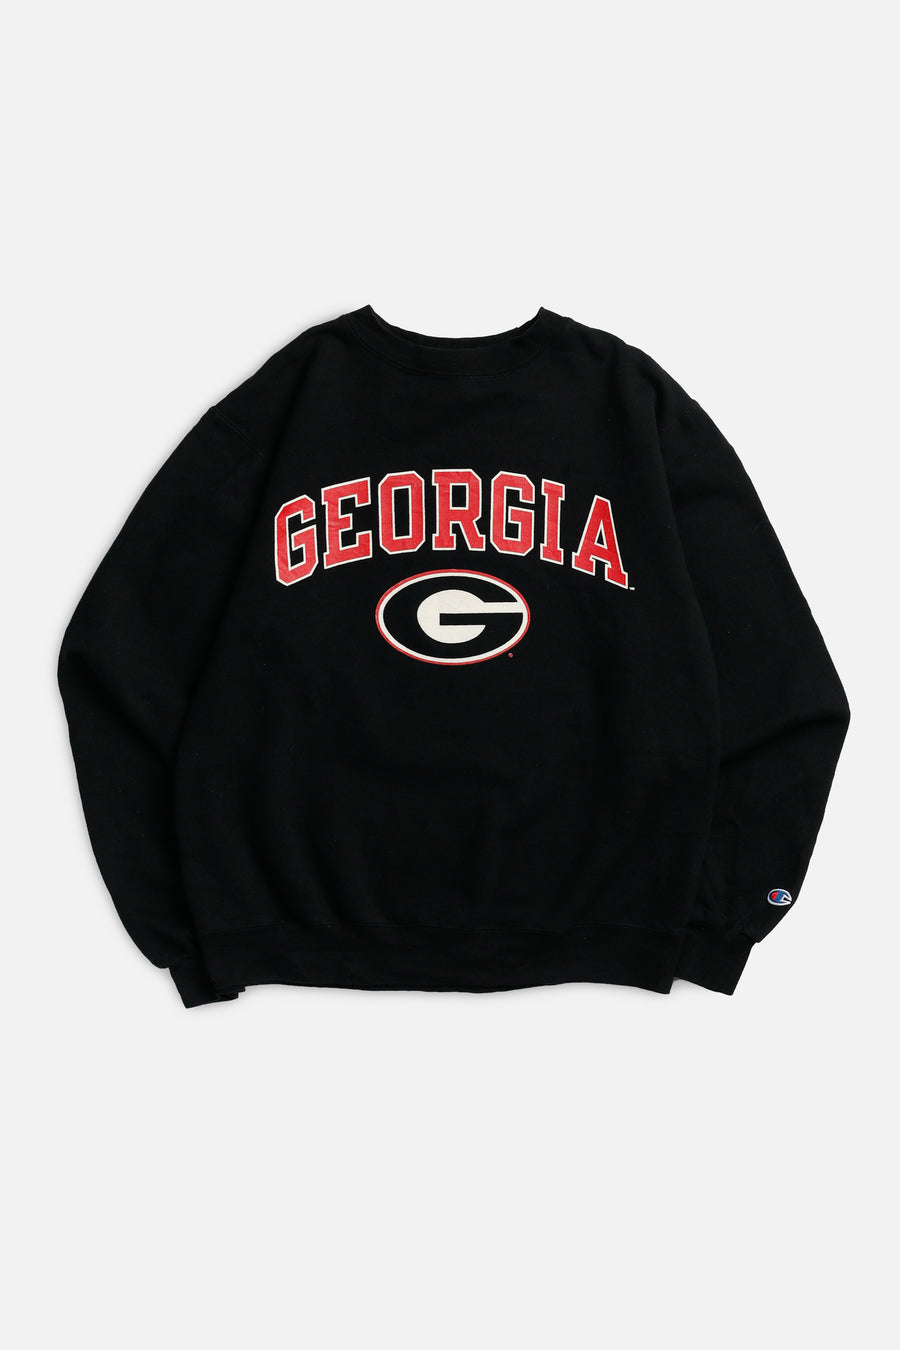 Vintage Georgia Sweatshirt - S